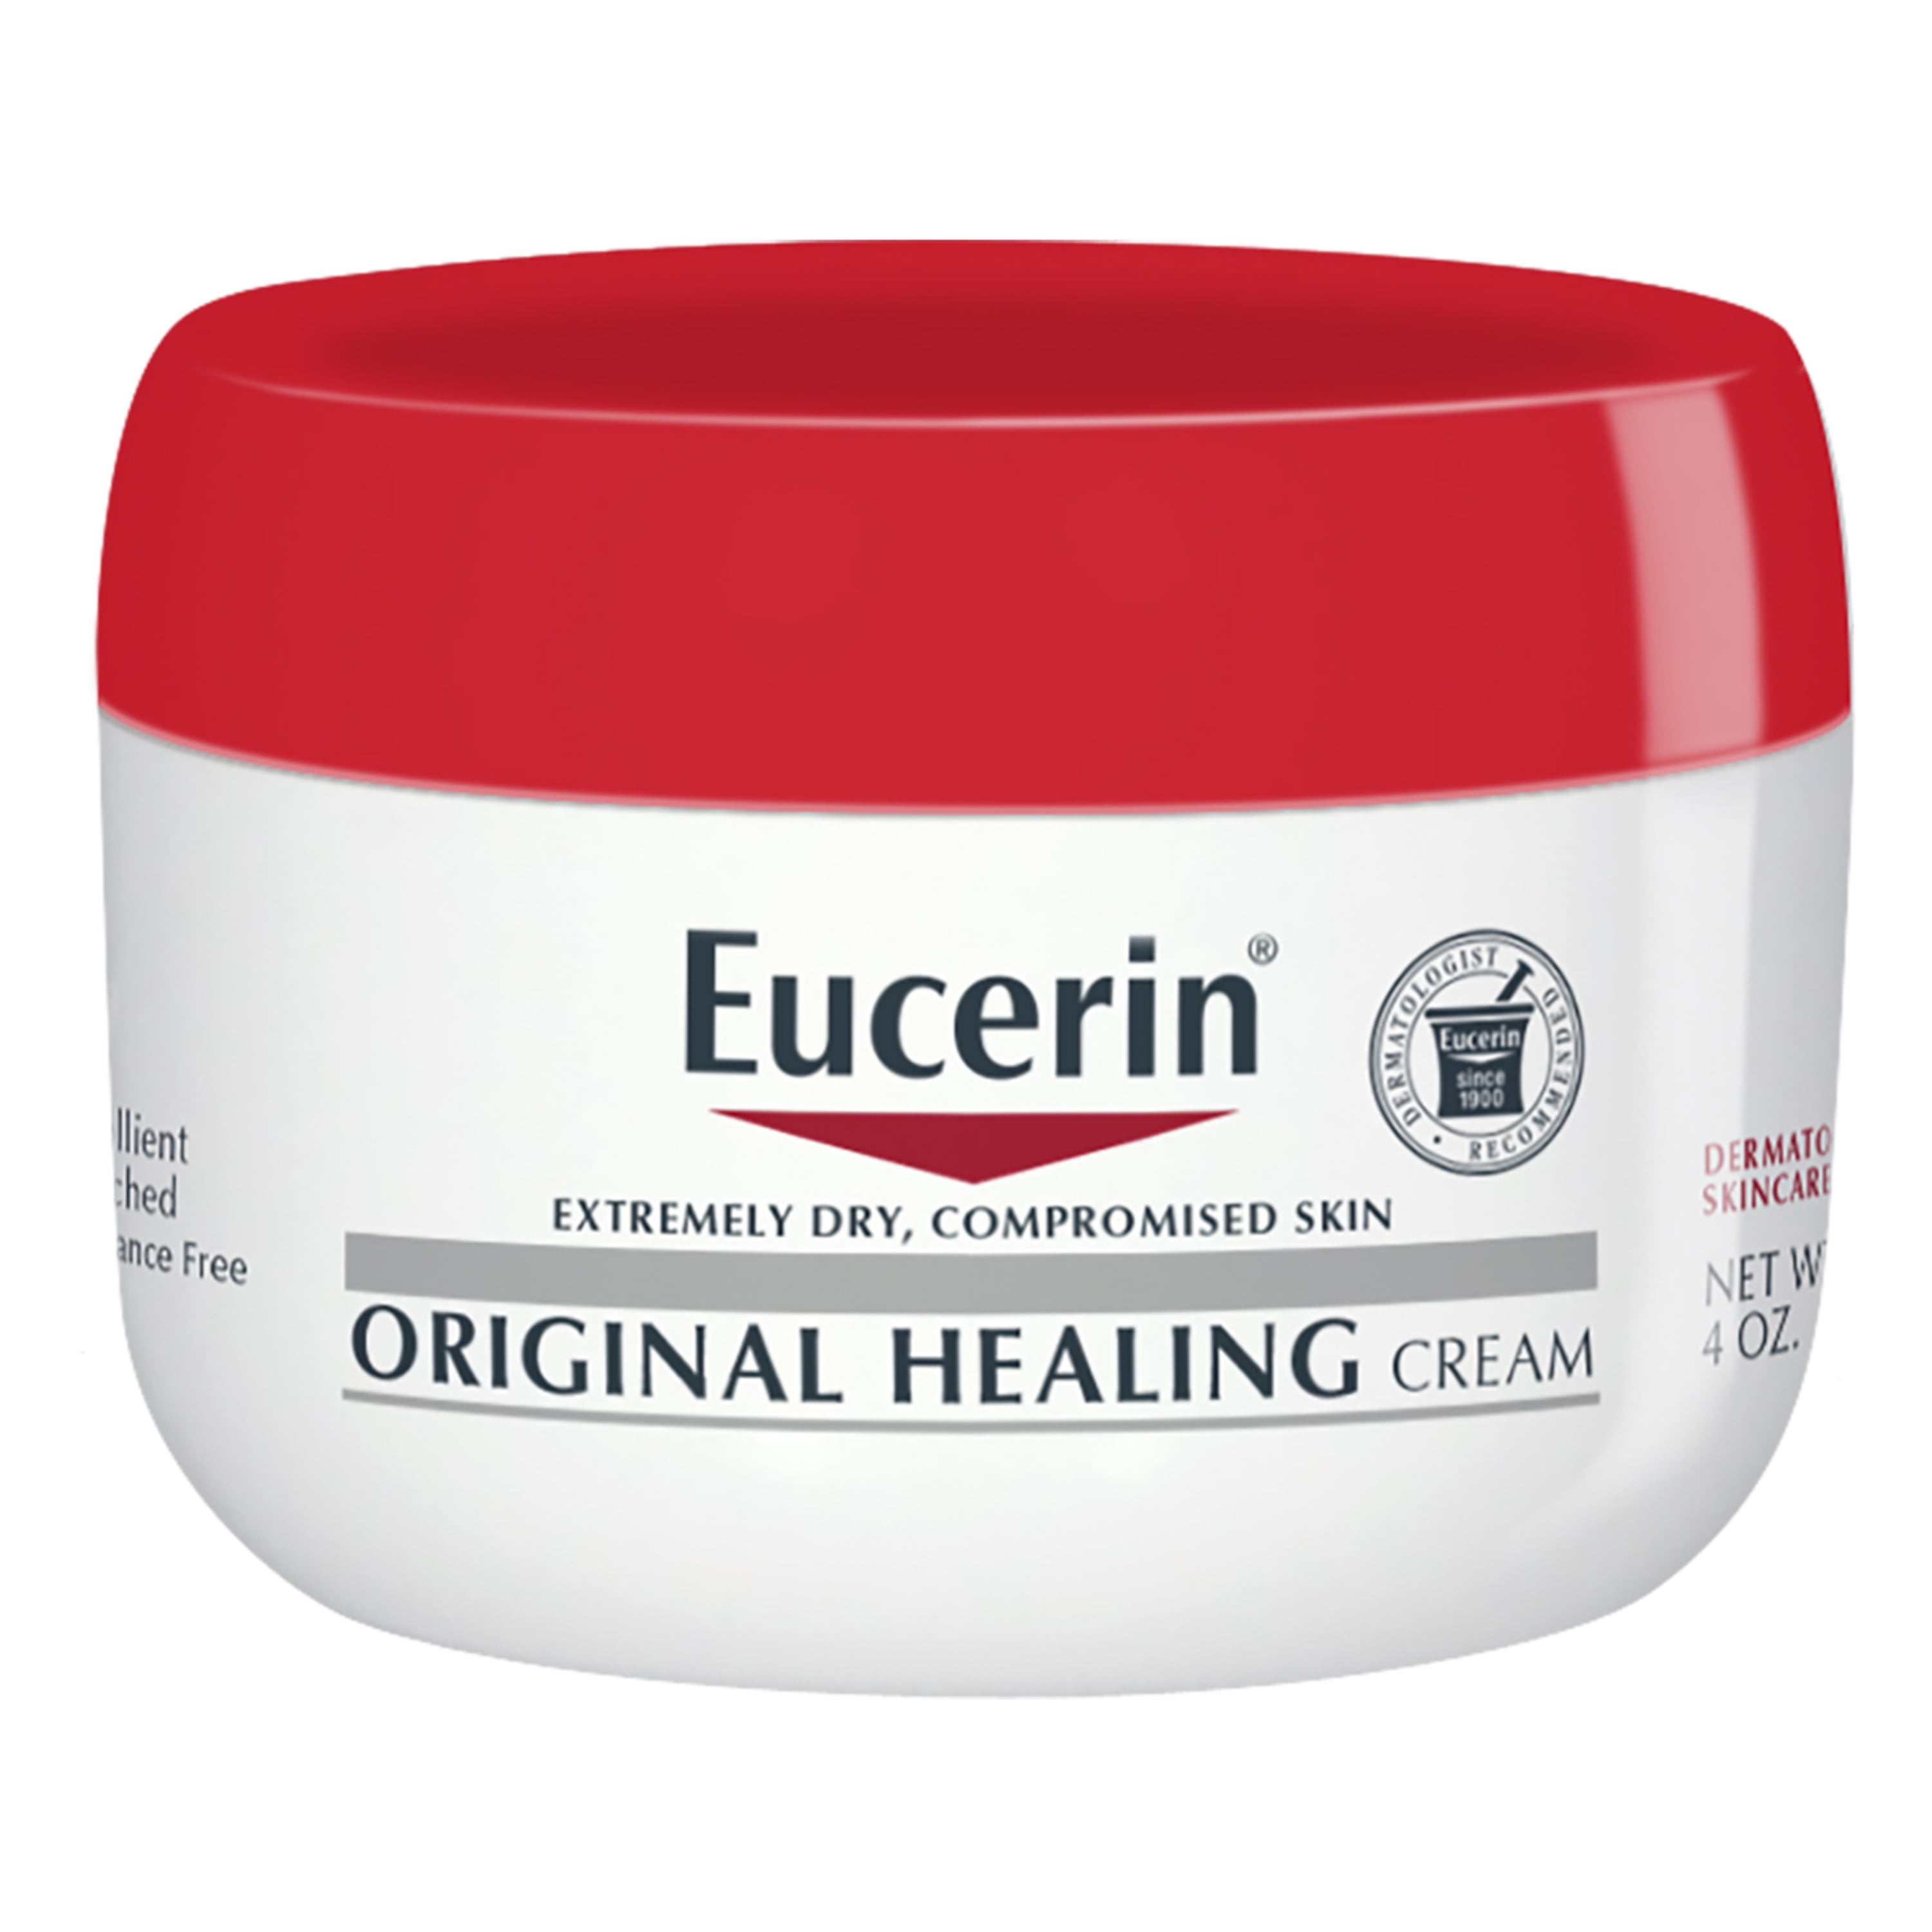 Udfør Problem Udvinding Eucerin Original Healing Cream, Body Cream for Dry Skin, 4 Oz Jar -  Walmart.com